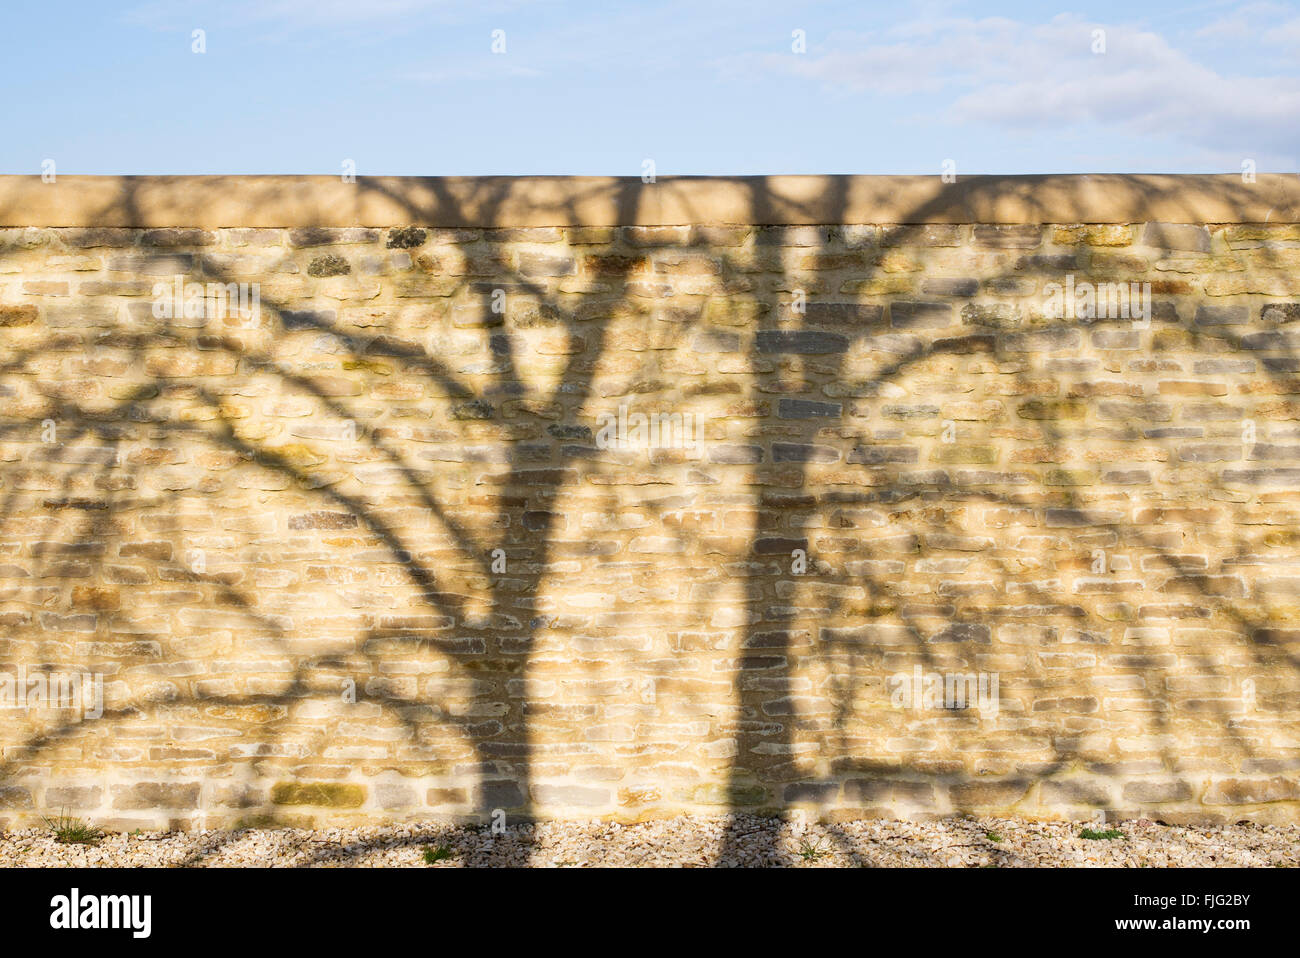 Baum Schatten Muster auf einem Stein Garten Wand Stockfoto